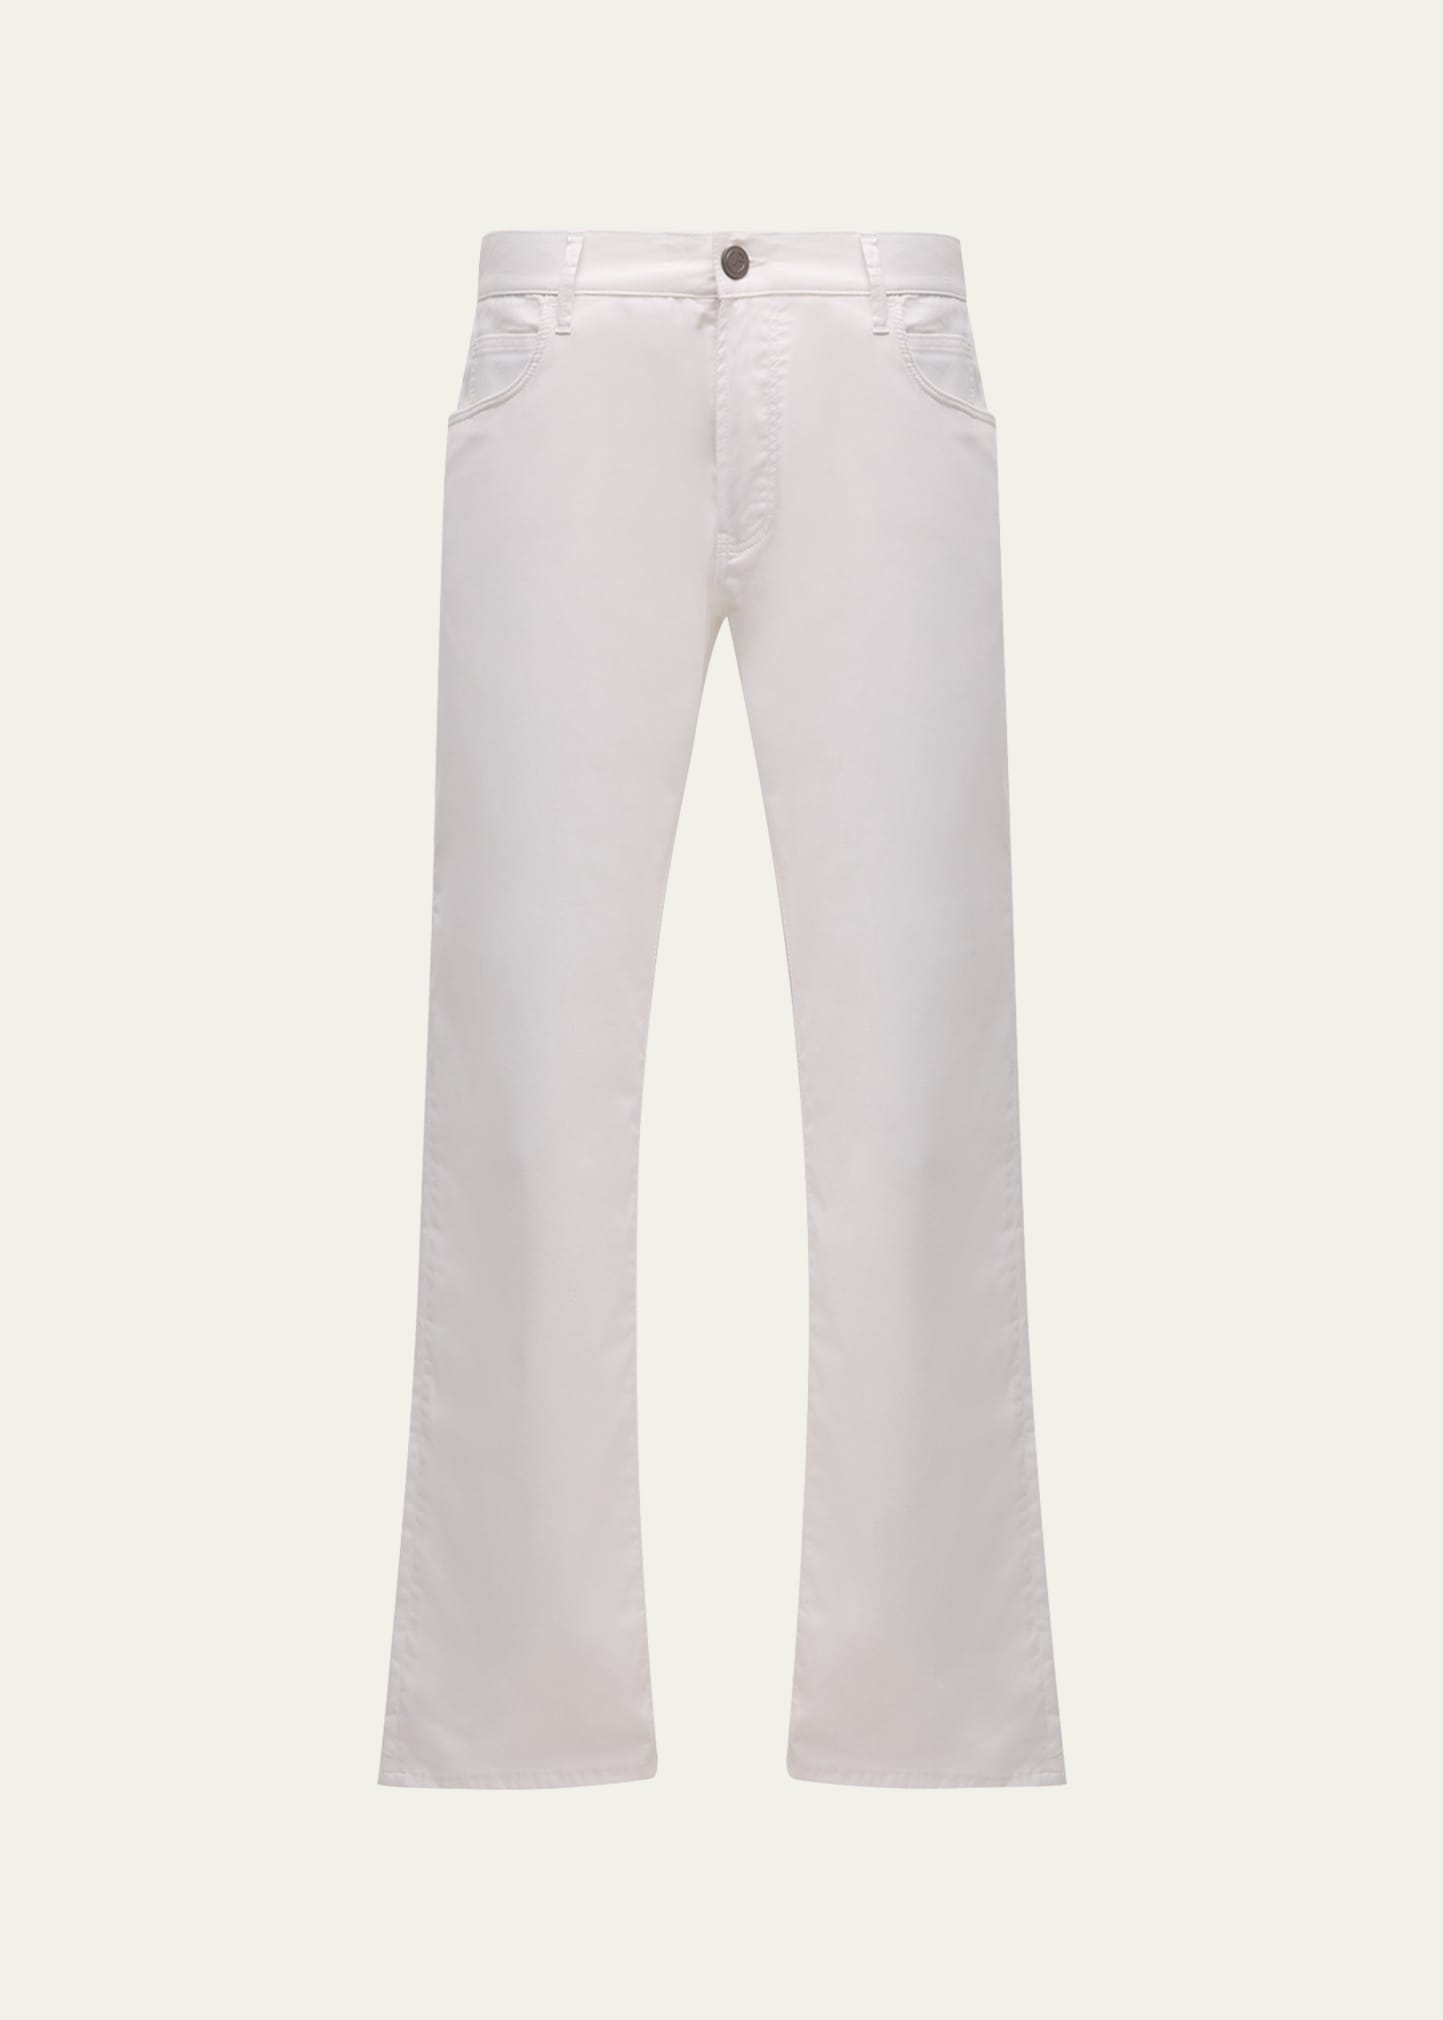 Giorgio Armani Men's Cotton-silk Stretch Trousers In White